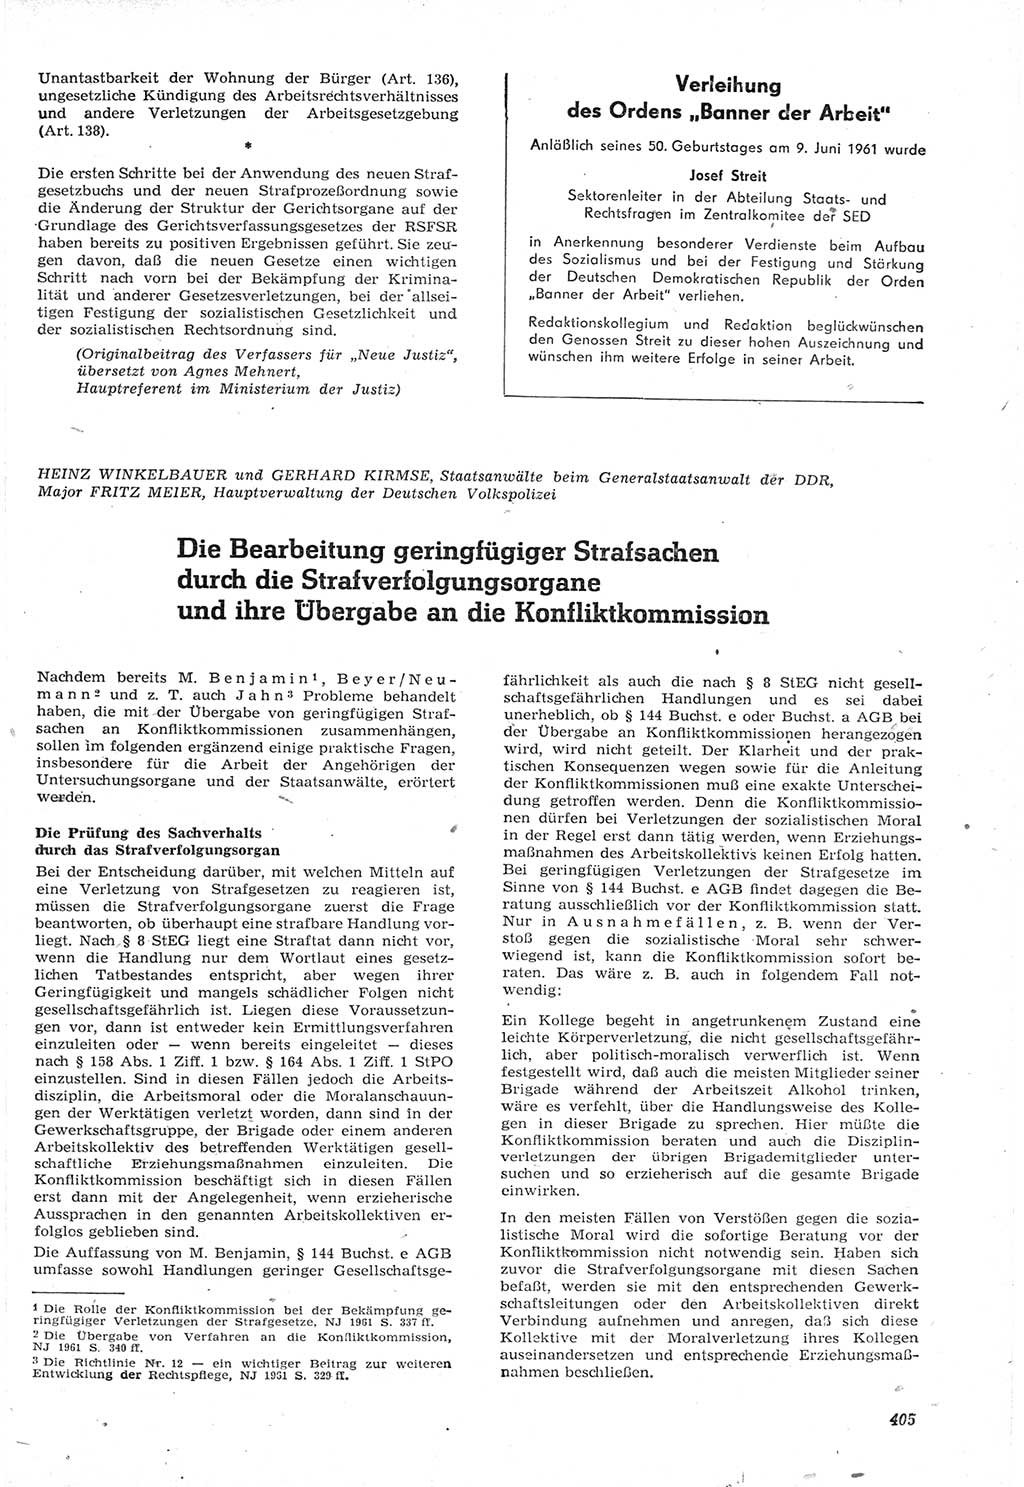 Neue Justiz (NJ), Zeitschrift für Recht und Rechtswissenschaft [Deutsche Demokratische Republik (DDR)], 15. Jahrgang 1961, Seite 405 (NJ DDR 1961, S. 405)